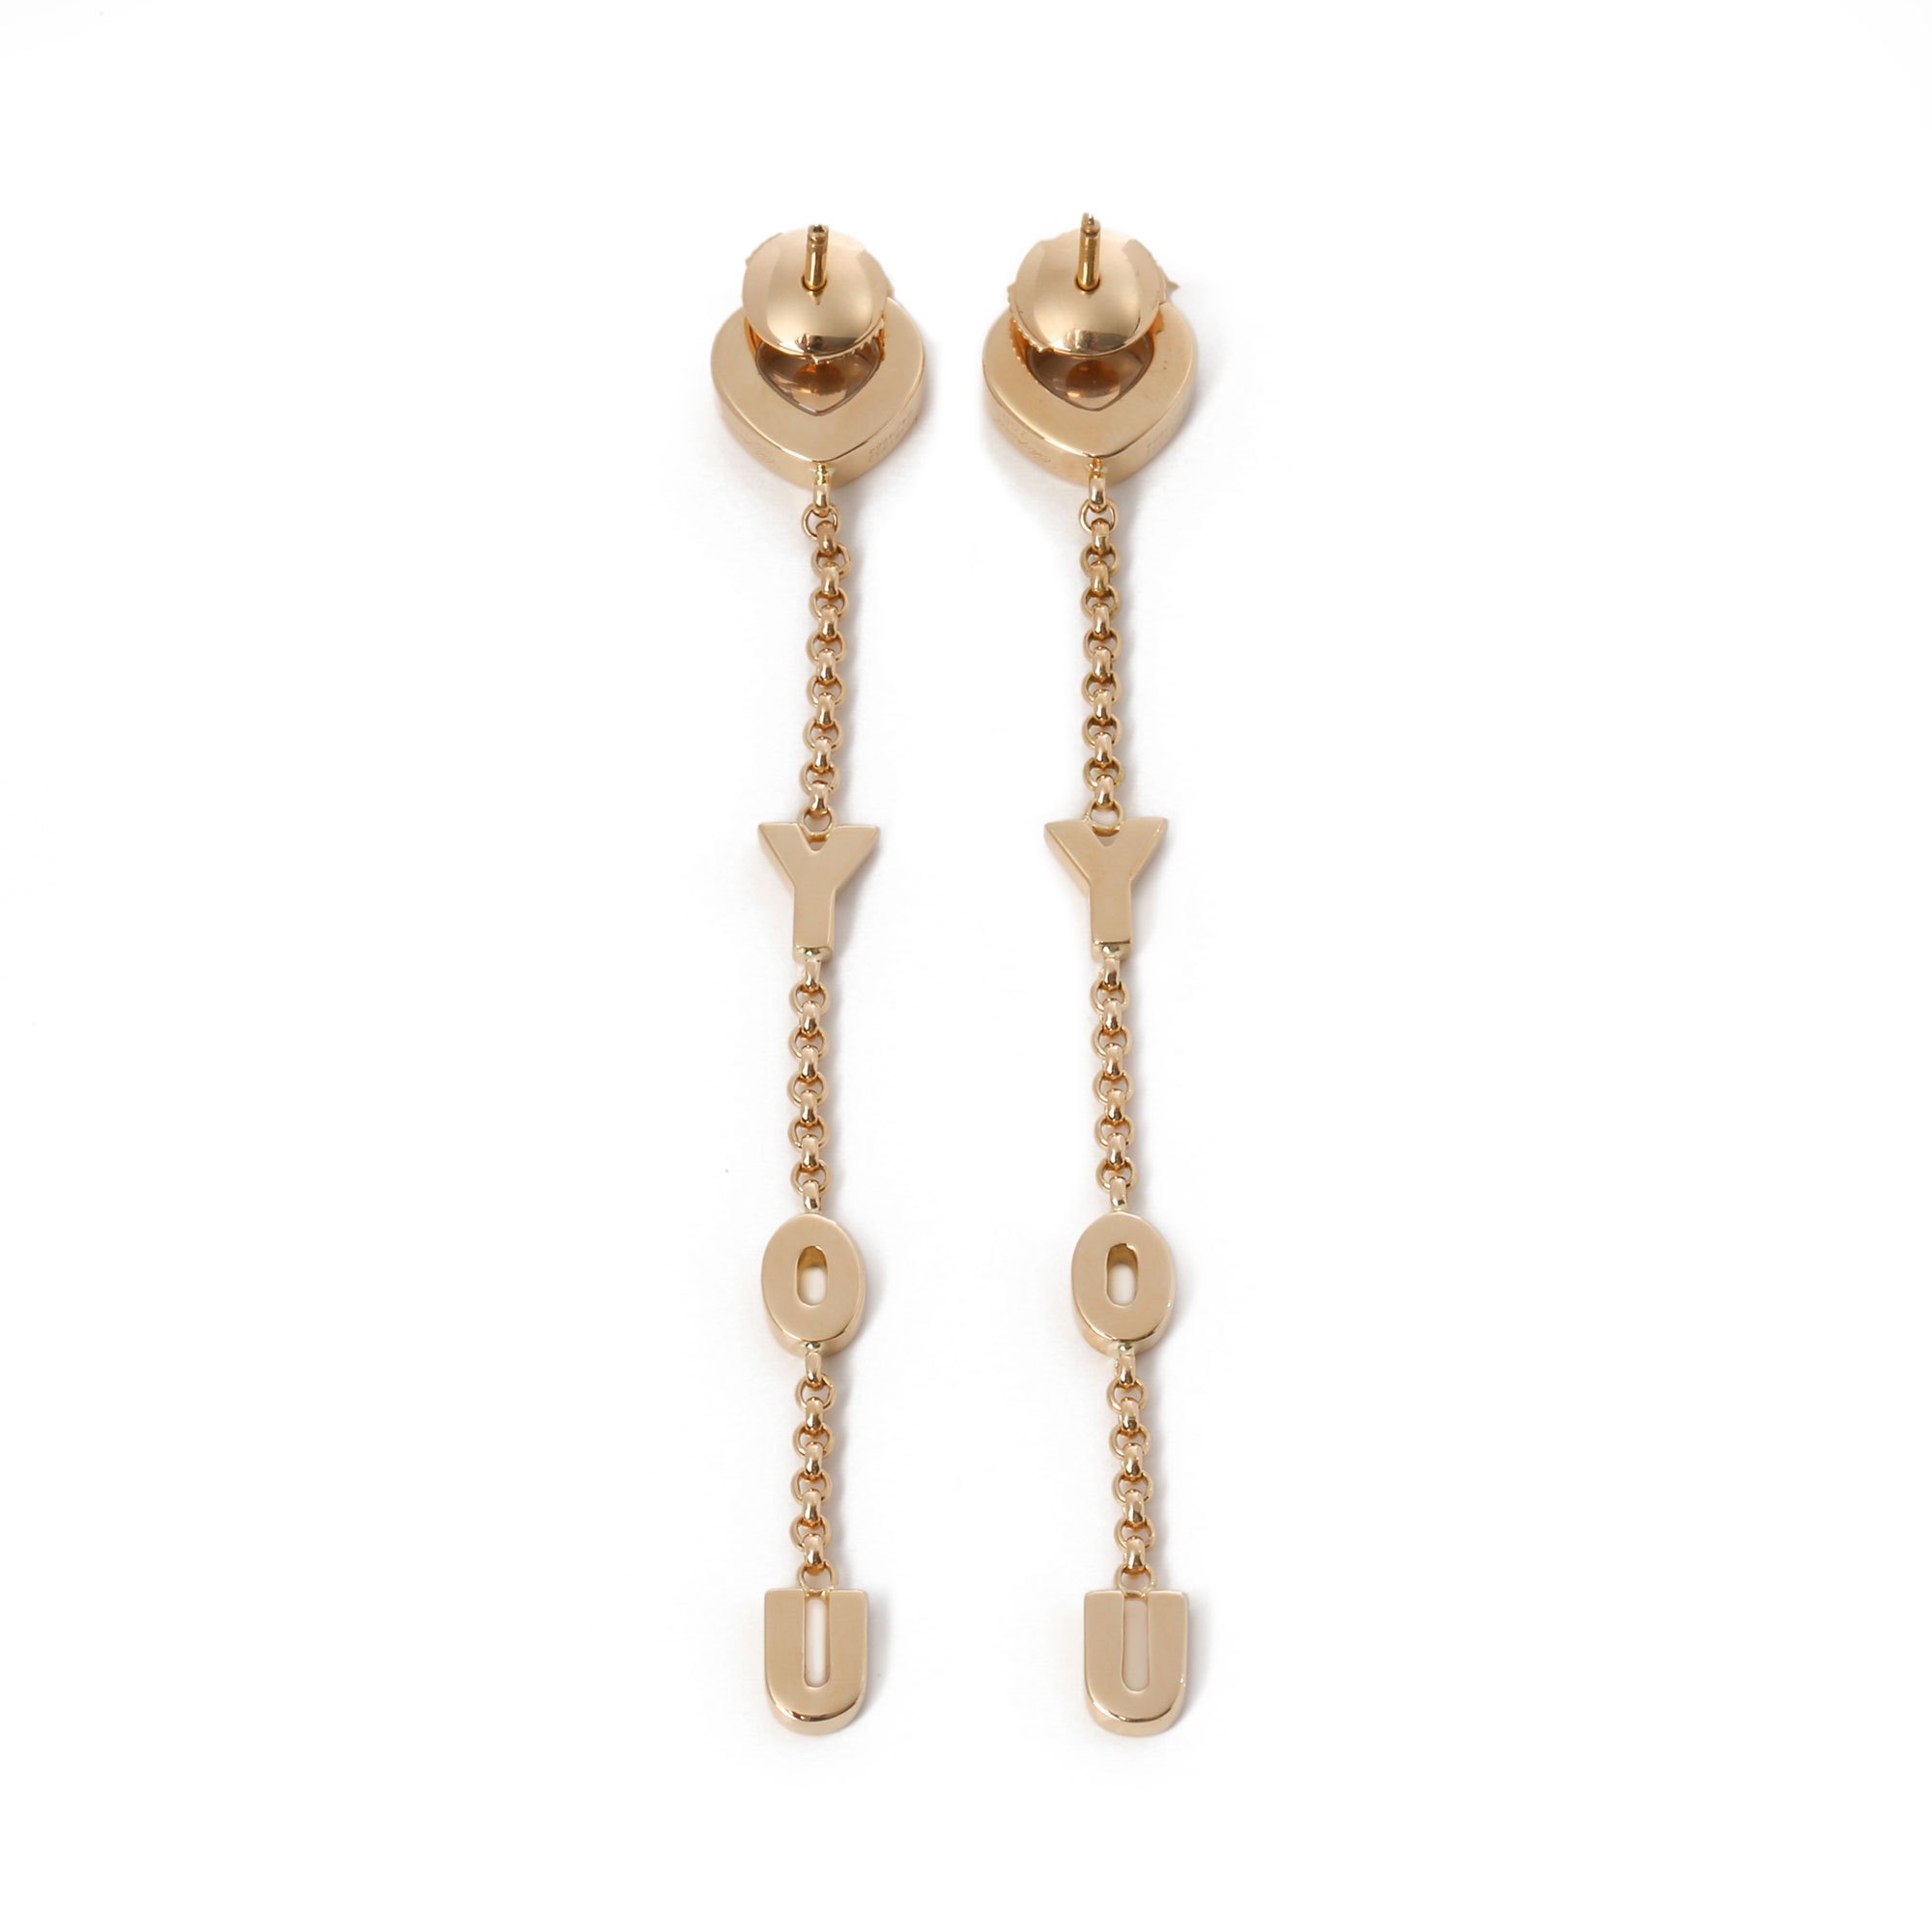 Chopard I love you earrings